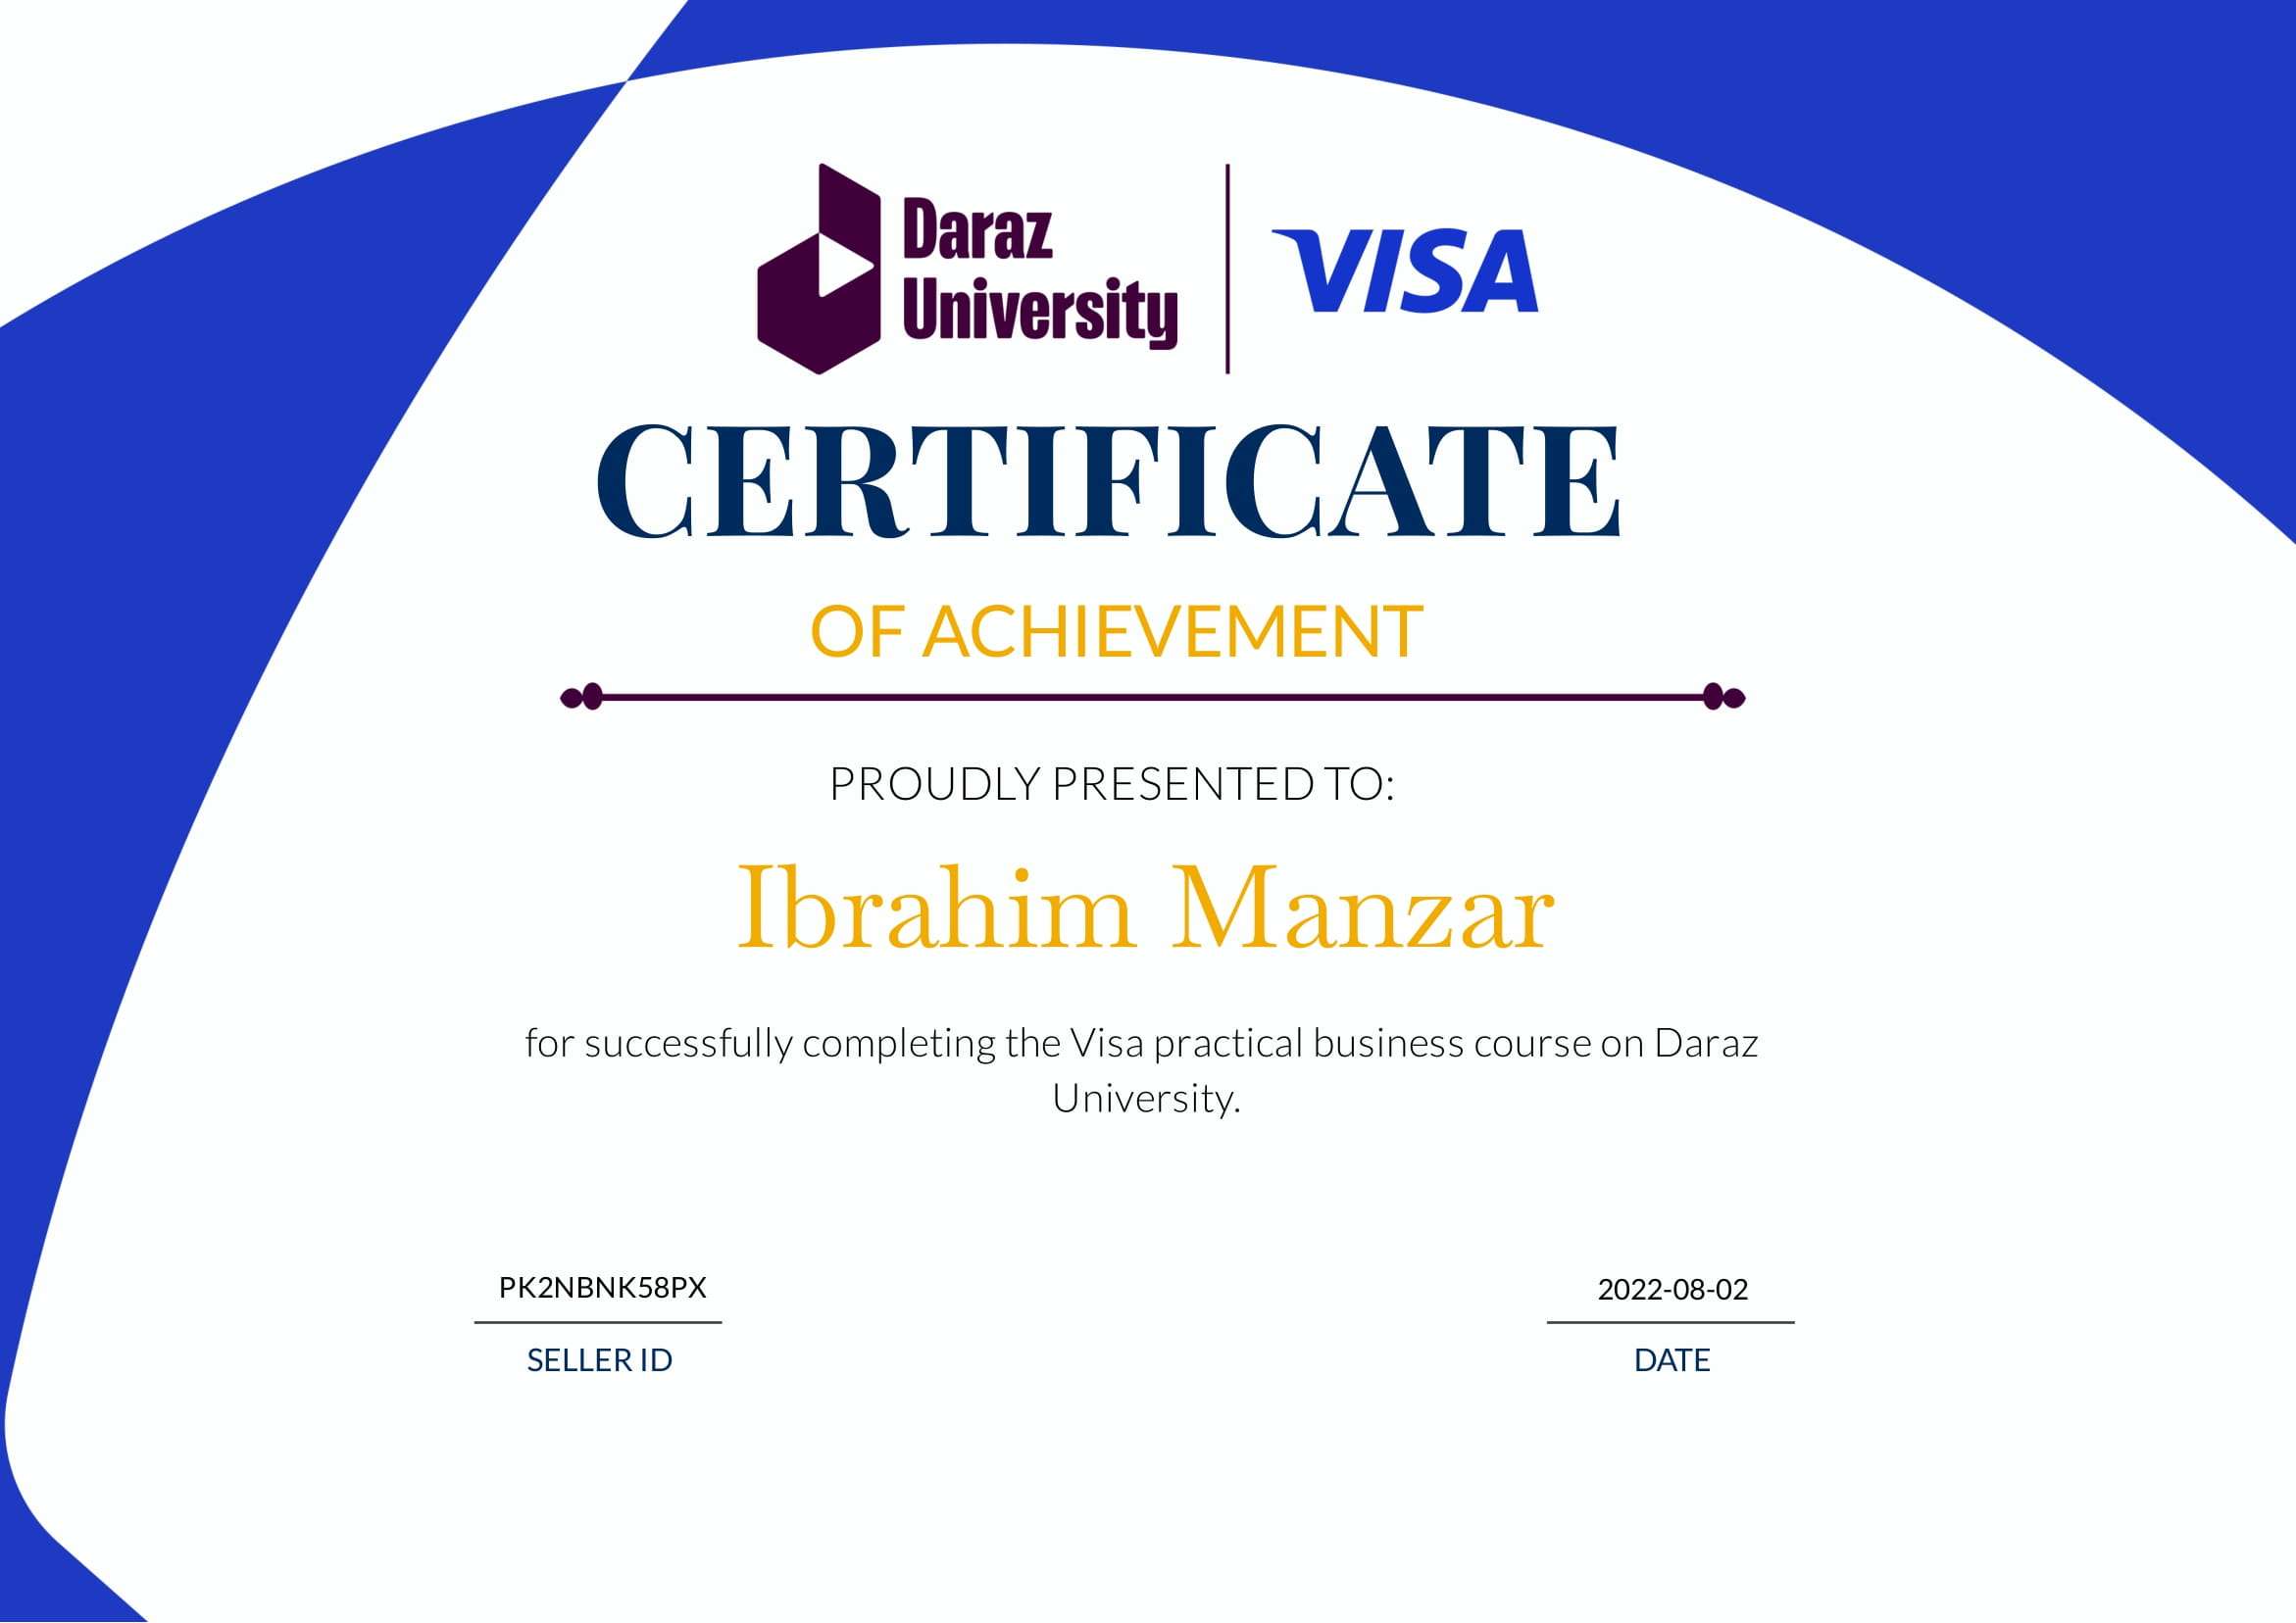 Daraz Certificate